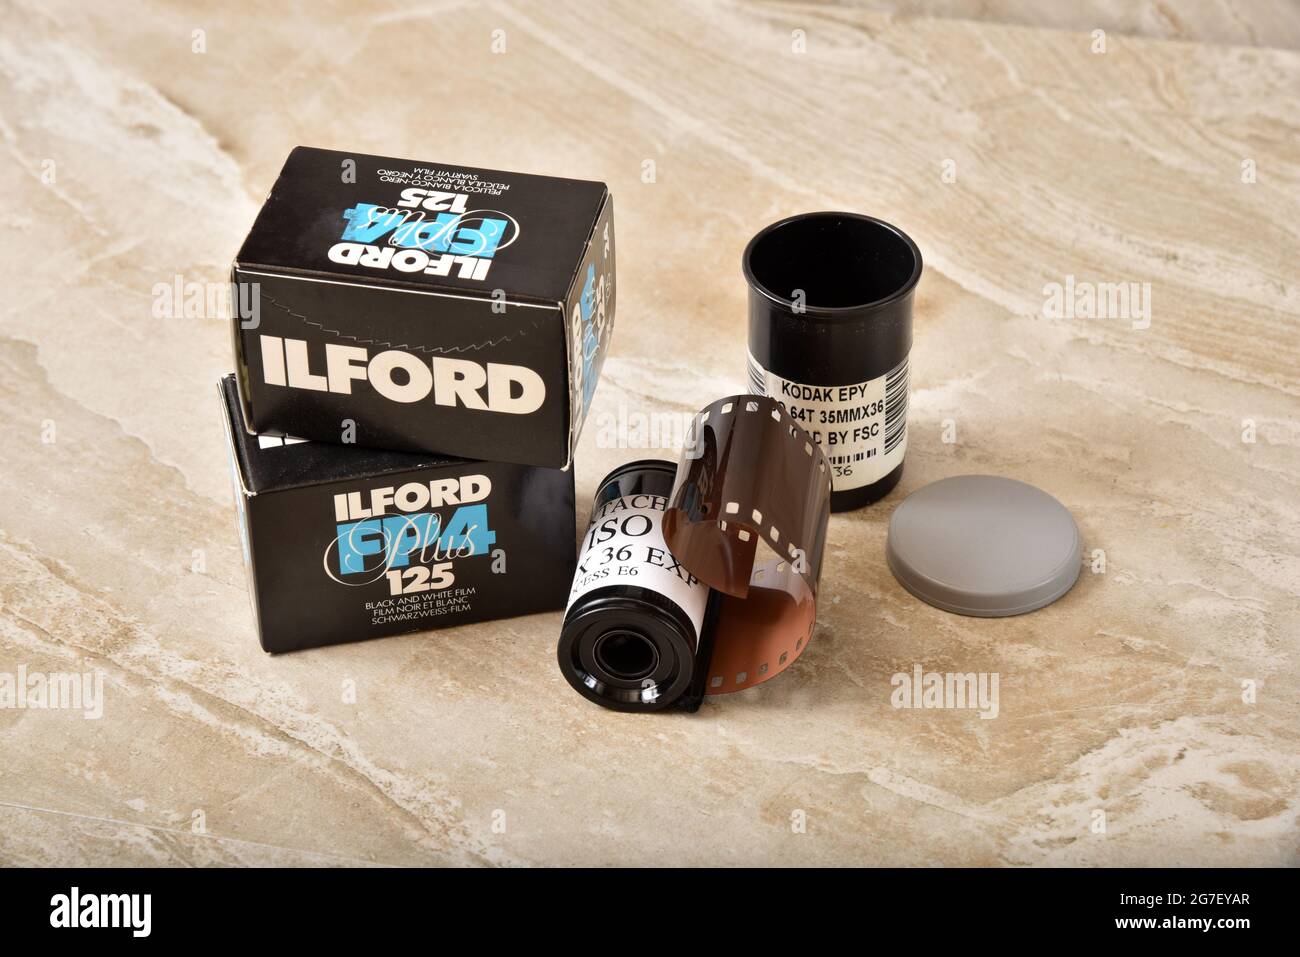 Cajas de película Ilford de 35 milímetros y un rollo de película Kodak, editorial ilustrativa Foto de stock